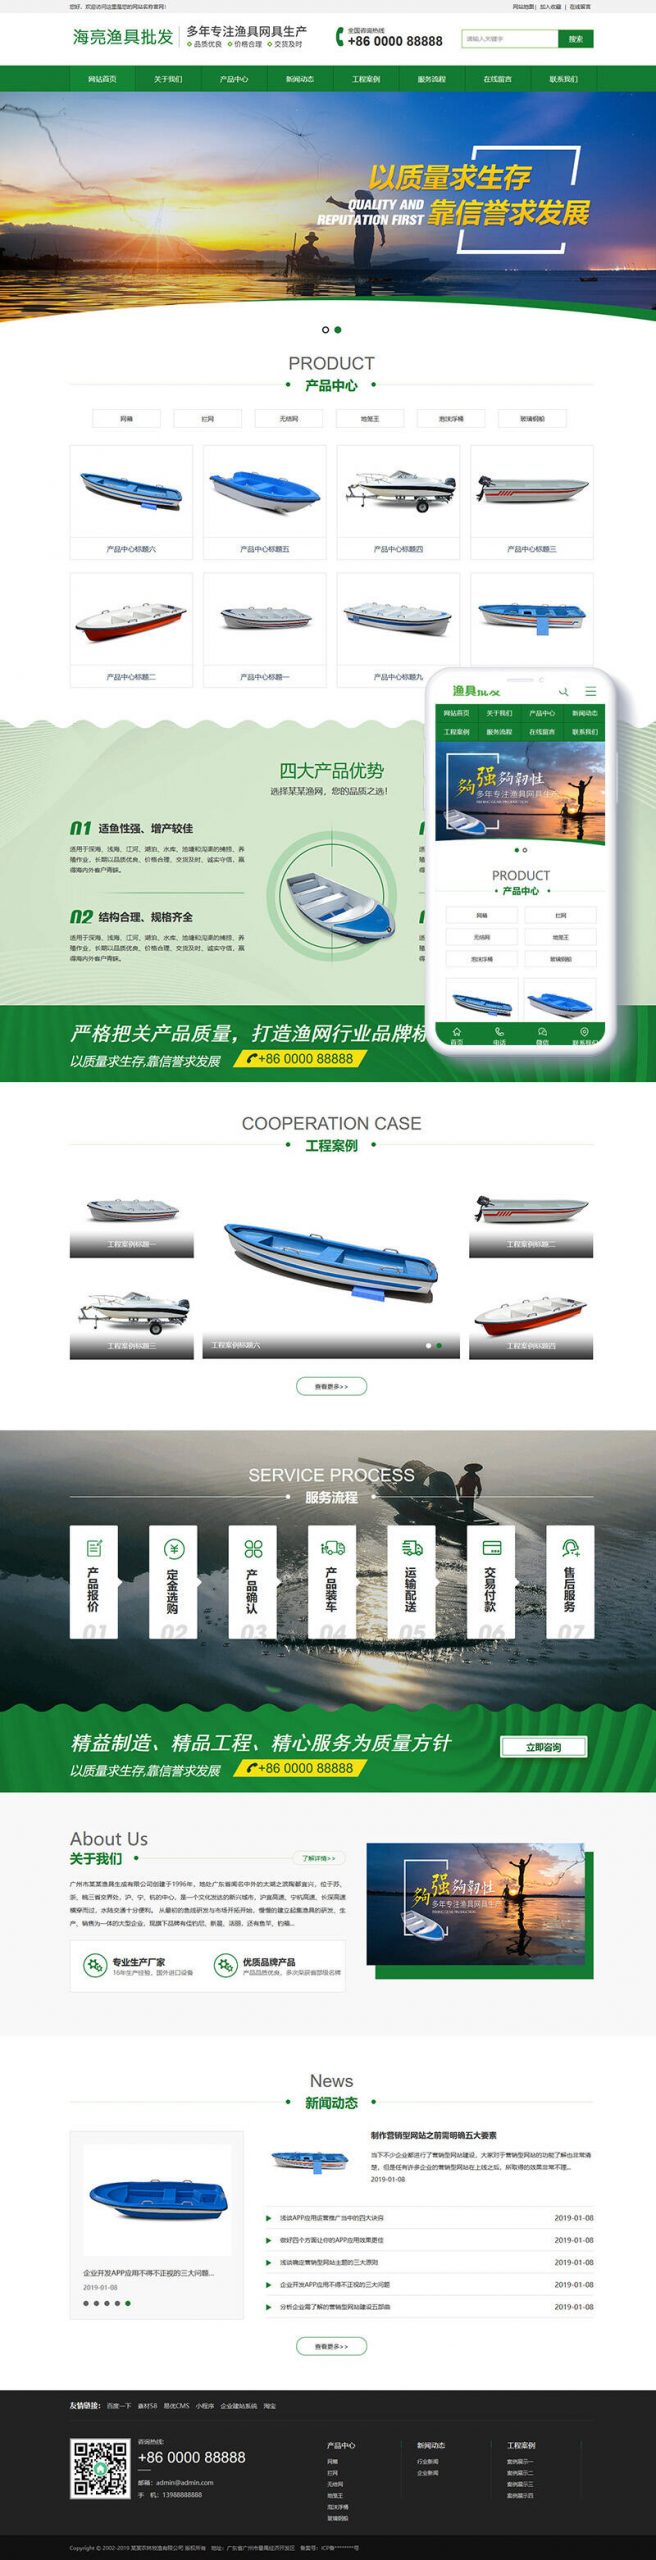 M546 渔具批发农林牧渔类网站织梦模板(带手机端)